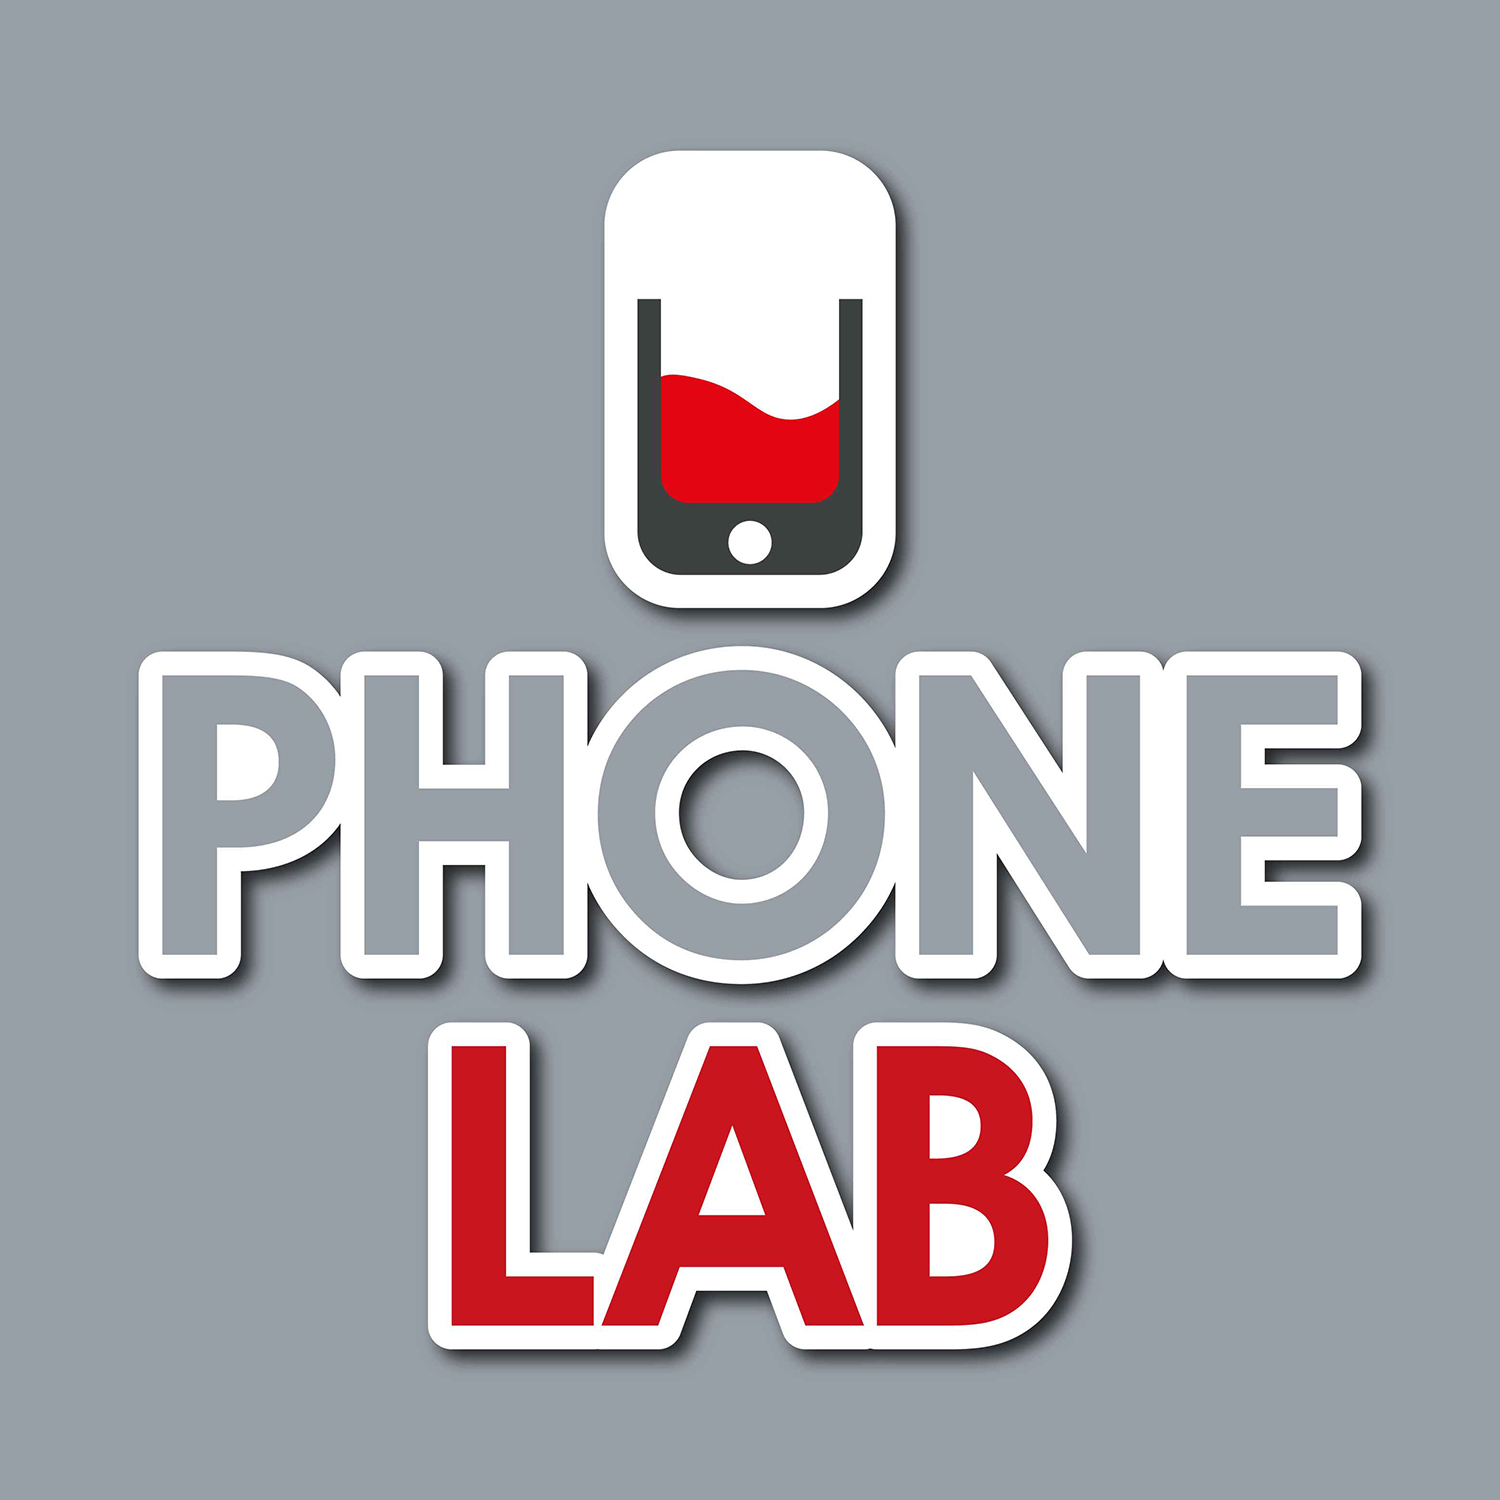 phone lab logo for inside shop